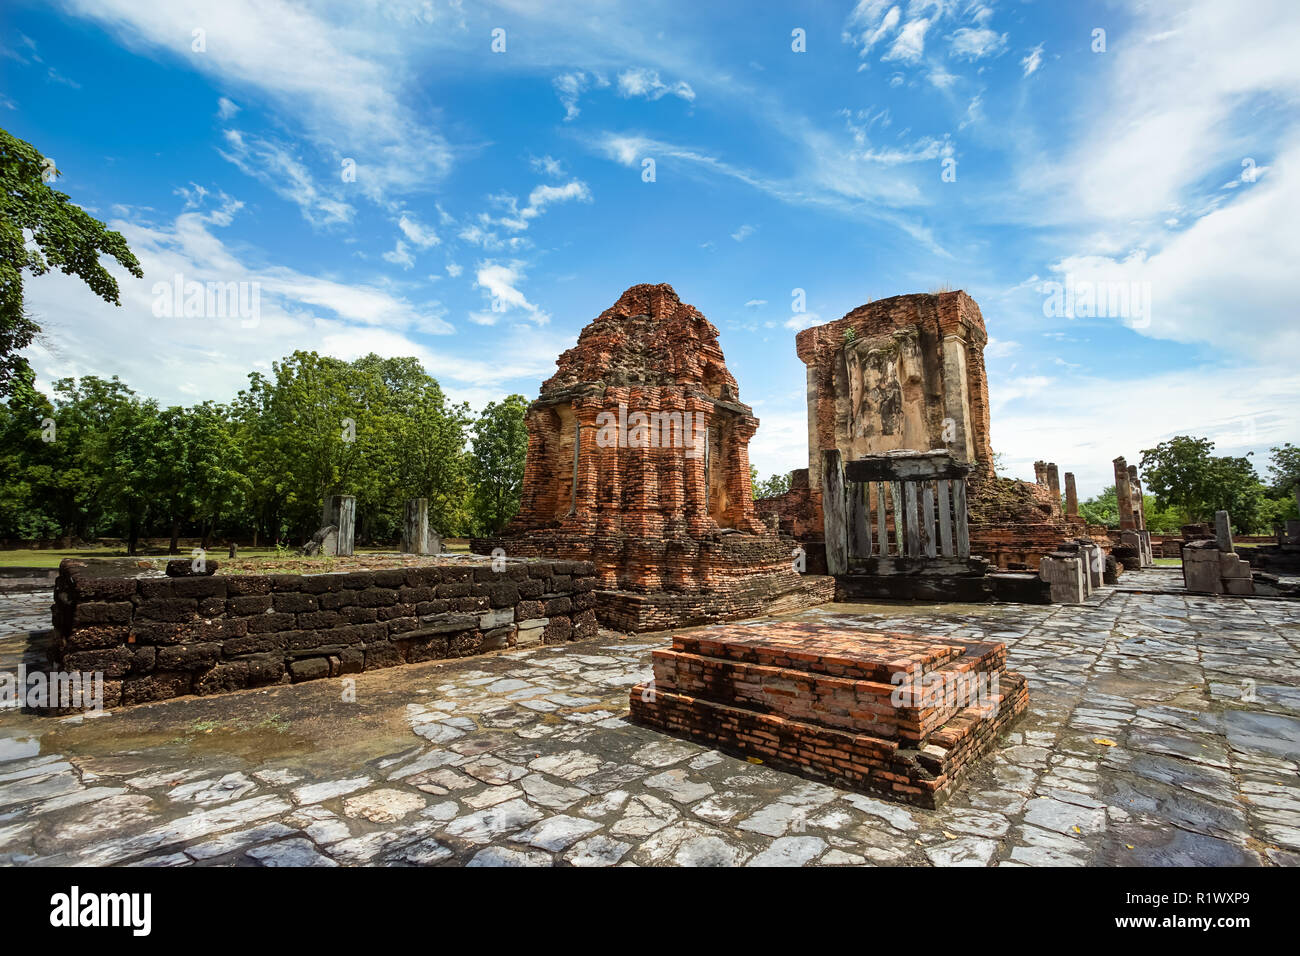 Site du patrimoine mondial de l'Wat Chetuphon dans le parc historique de Sukhothai, Thaïlande, province de Sukhothai. Banque D'Images